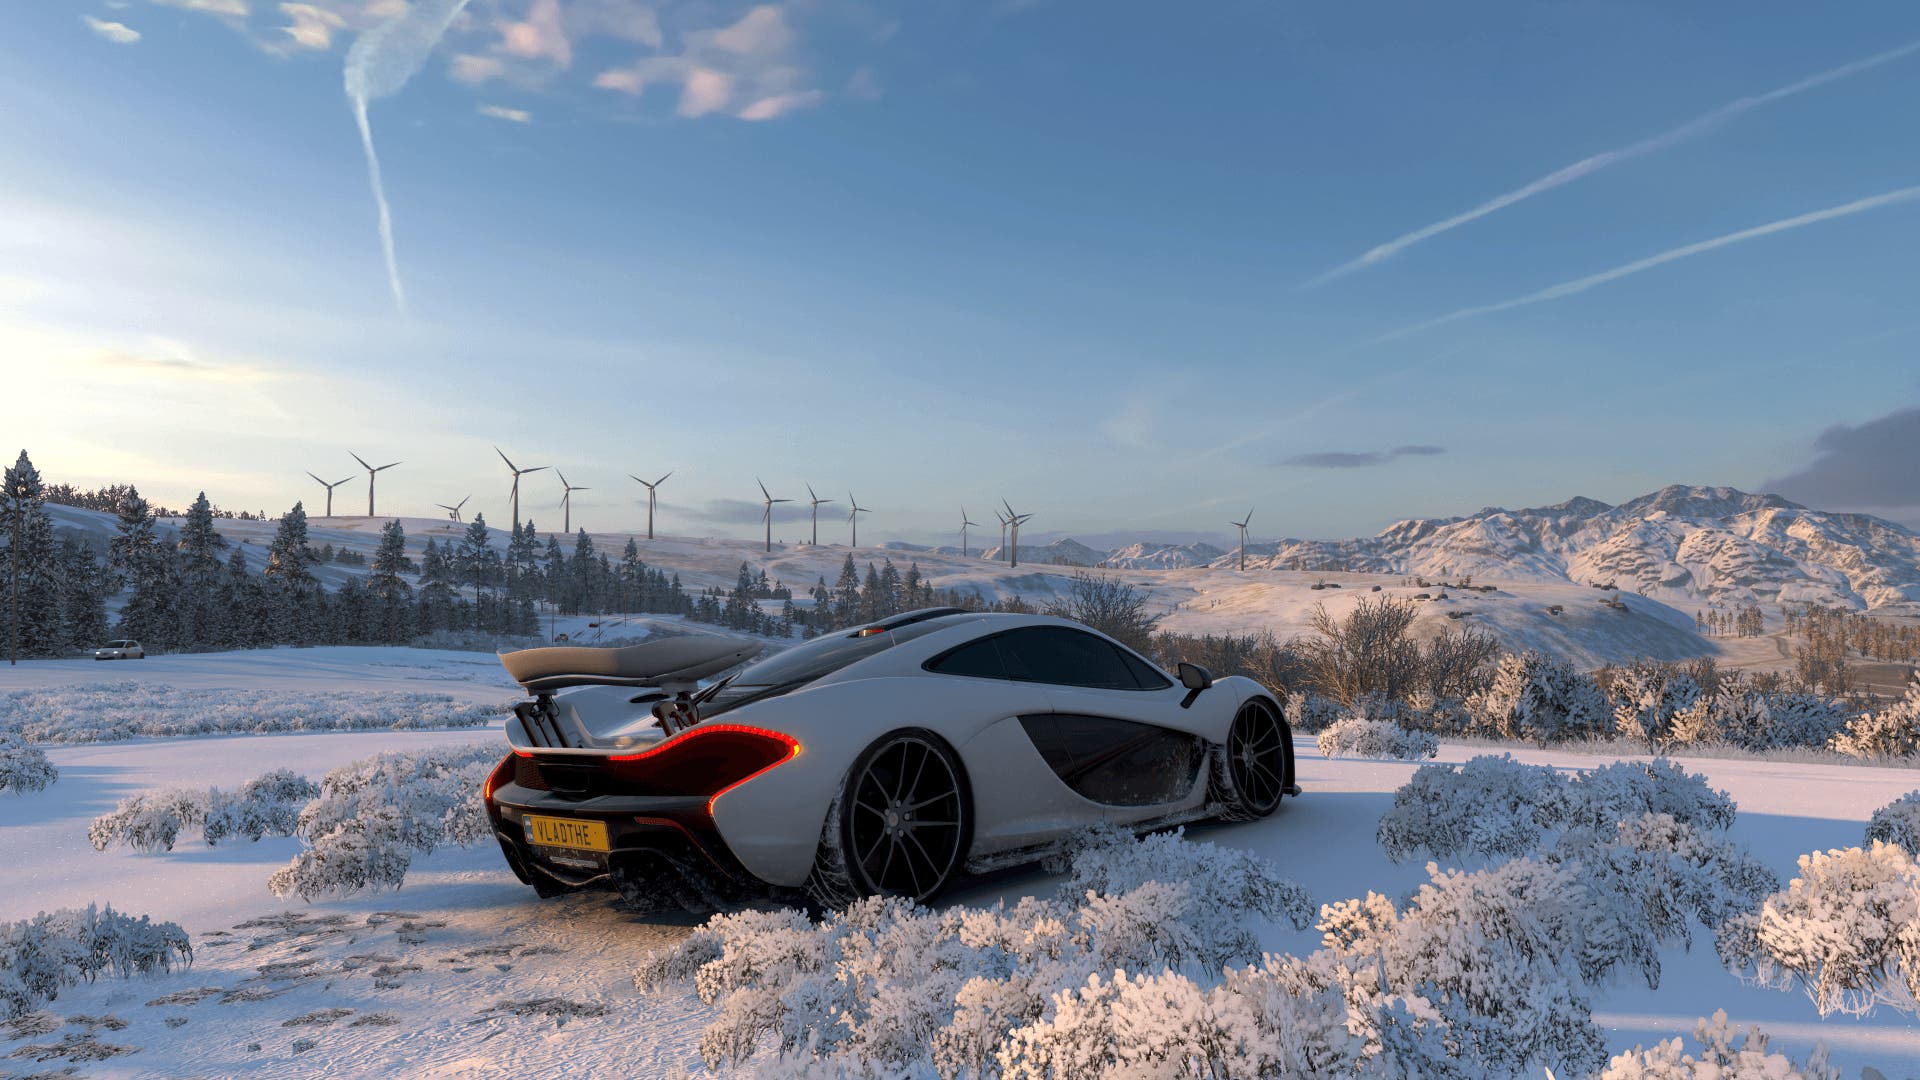 Confira os requisitos mínimos e recomendados de Forza Horizon 5 para PC